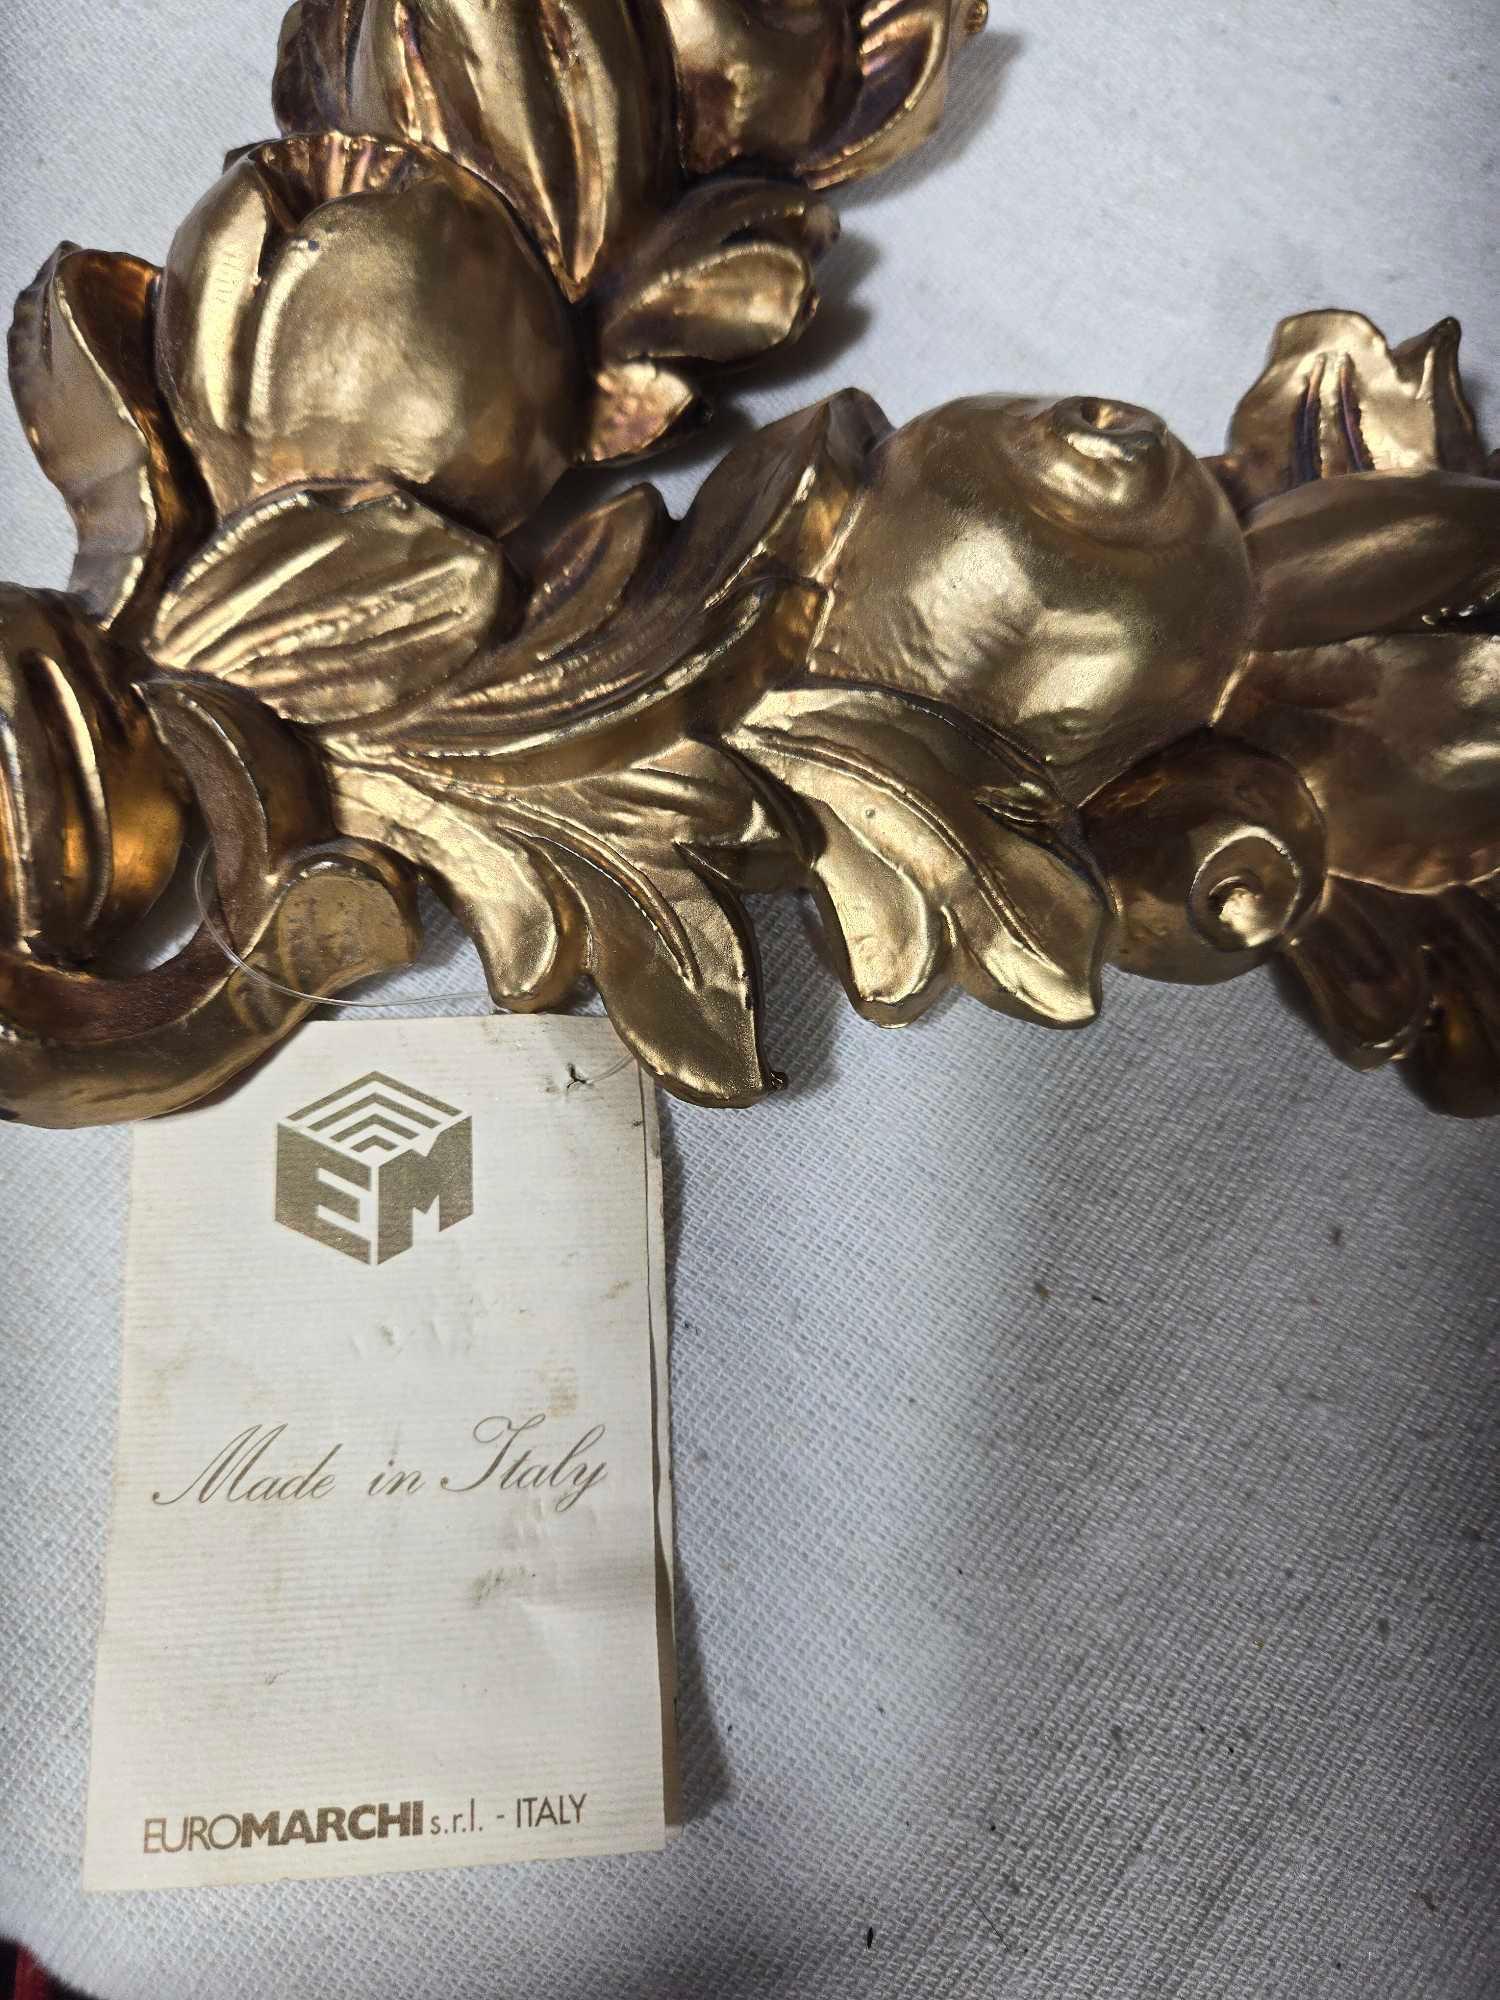 5 Pcs. Vintage Pottery Plus Italian Gold Gilt Wreath Decorations